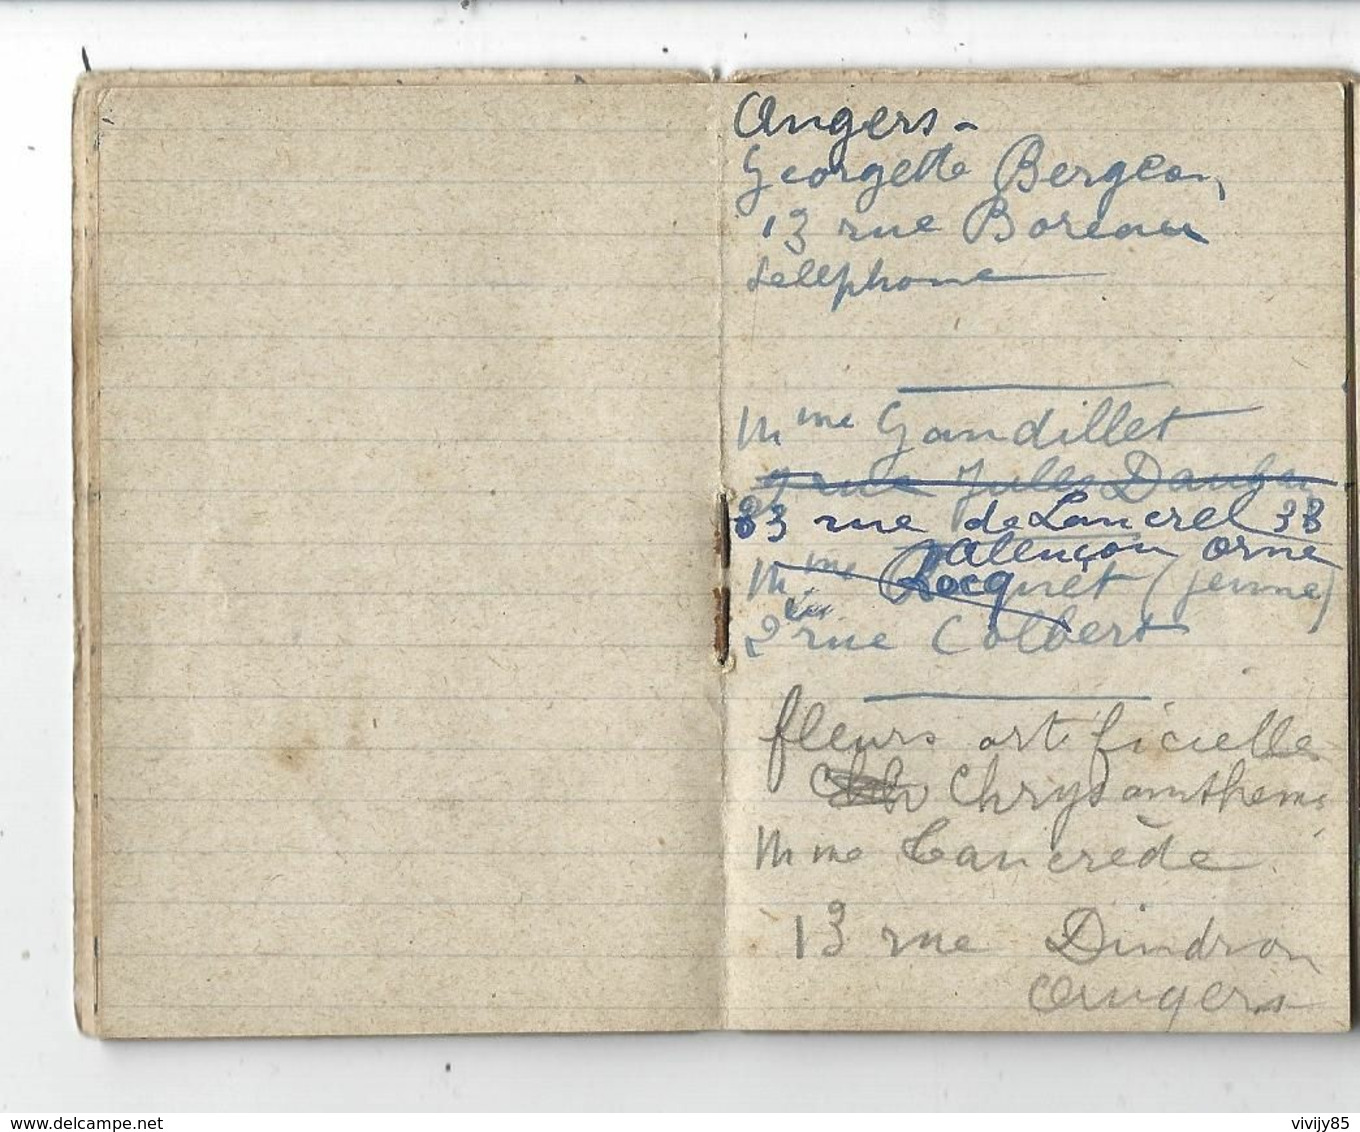 49 - ANGERS - Petit Carnet De Notes Et Calendrier  " Maison RICHARD GELUSSEAU - Horlogerie Bijouterie Orfèvrerie -1931 - Grand Format : 1921-40